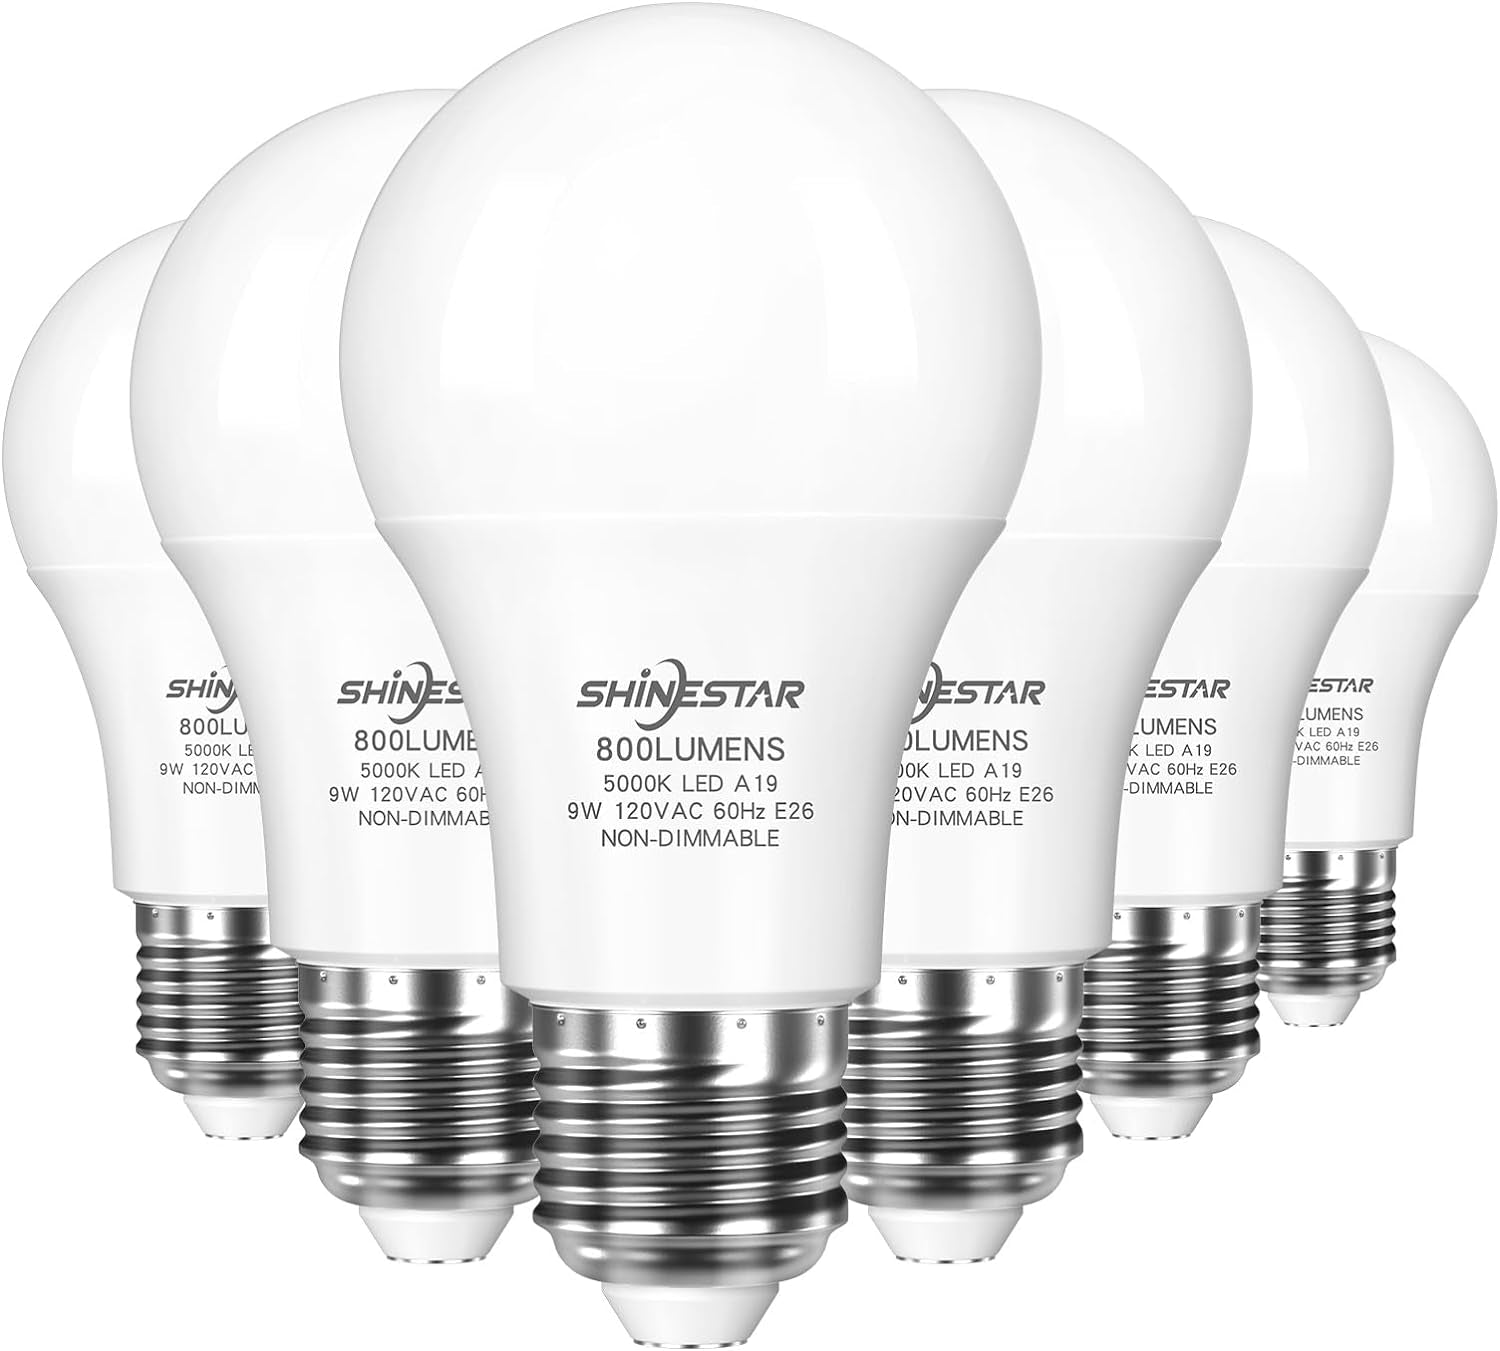 6-Pack Daylight Led Light Bulbs 60 Watt, Bright White 5000K, E26 A19 Led Bulb, Non-Dimmable